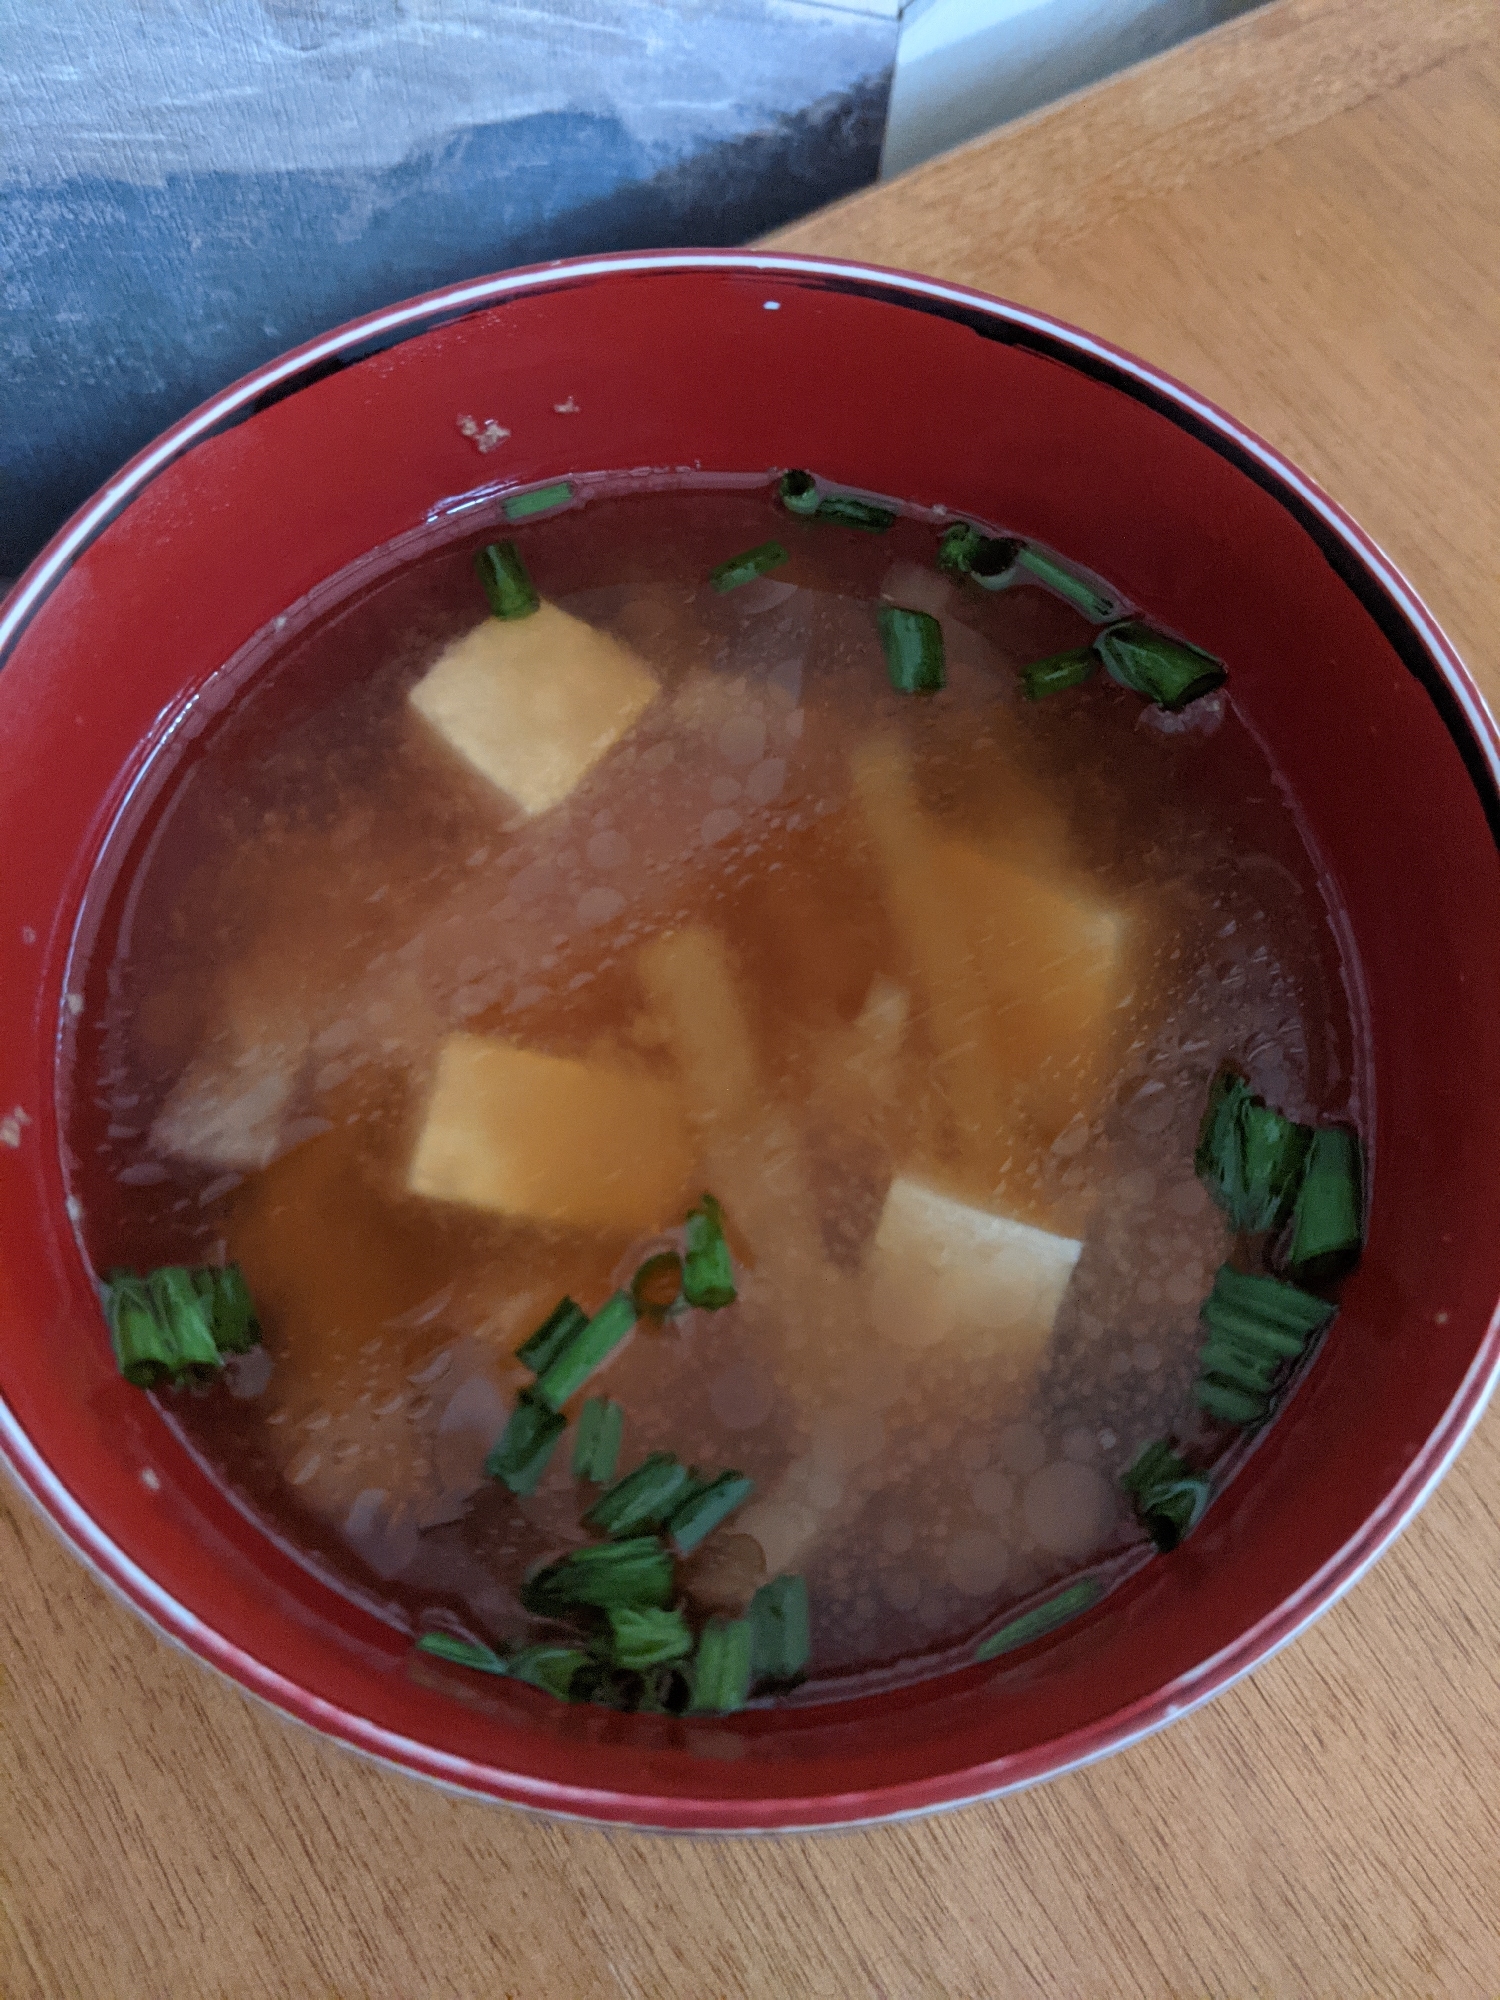 大根と豆腐の生姜入りポカポカ味噌汁